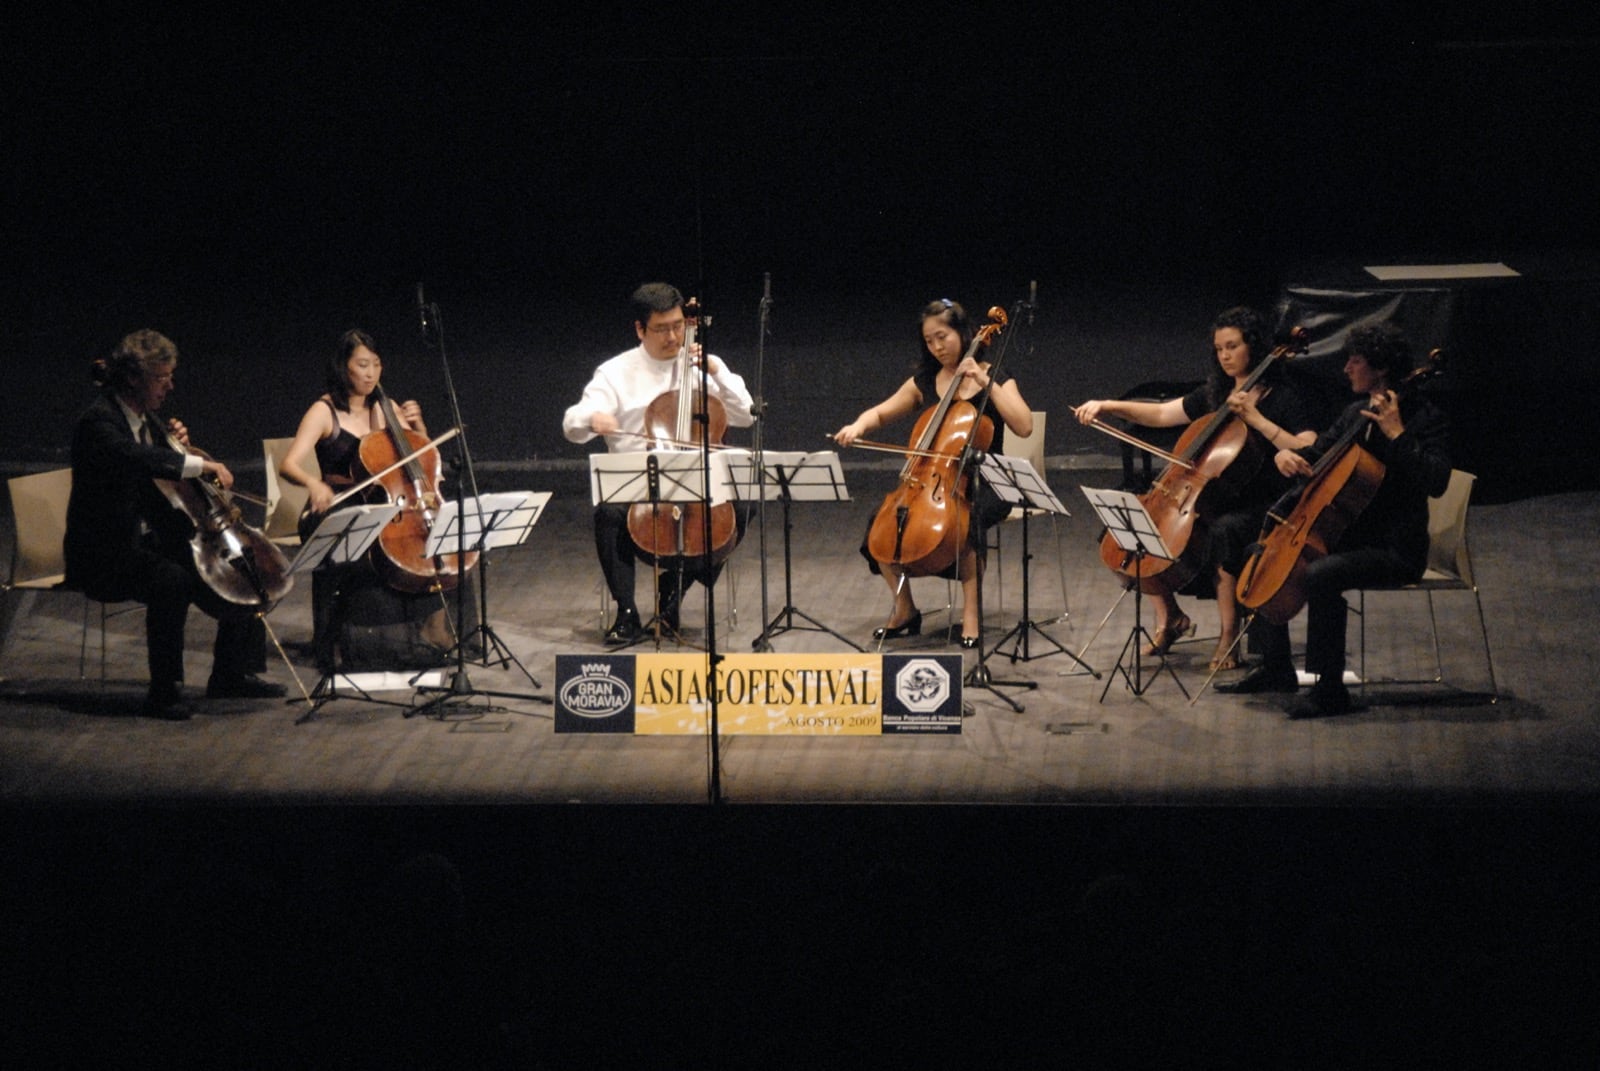 06-08-2009 - Cello Passionato004 - 